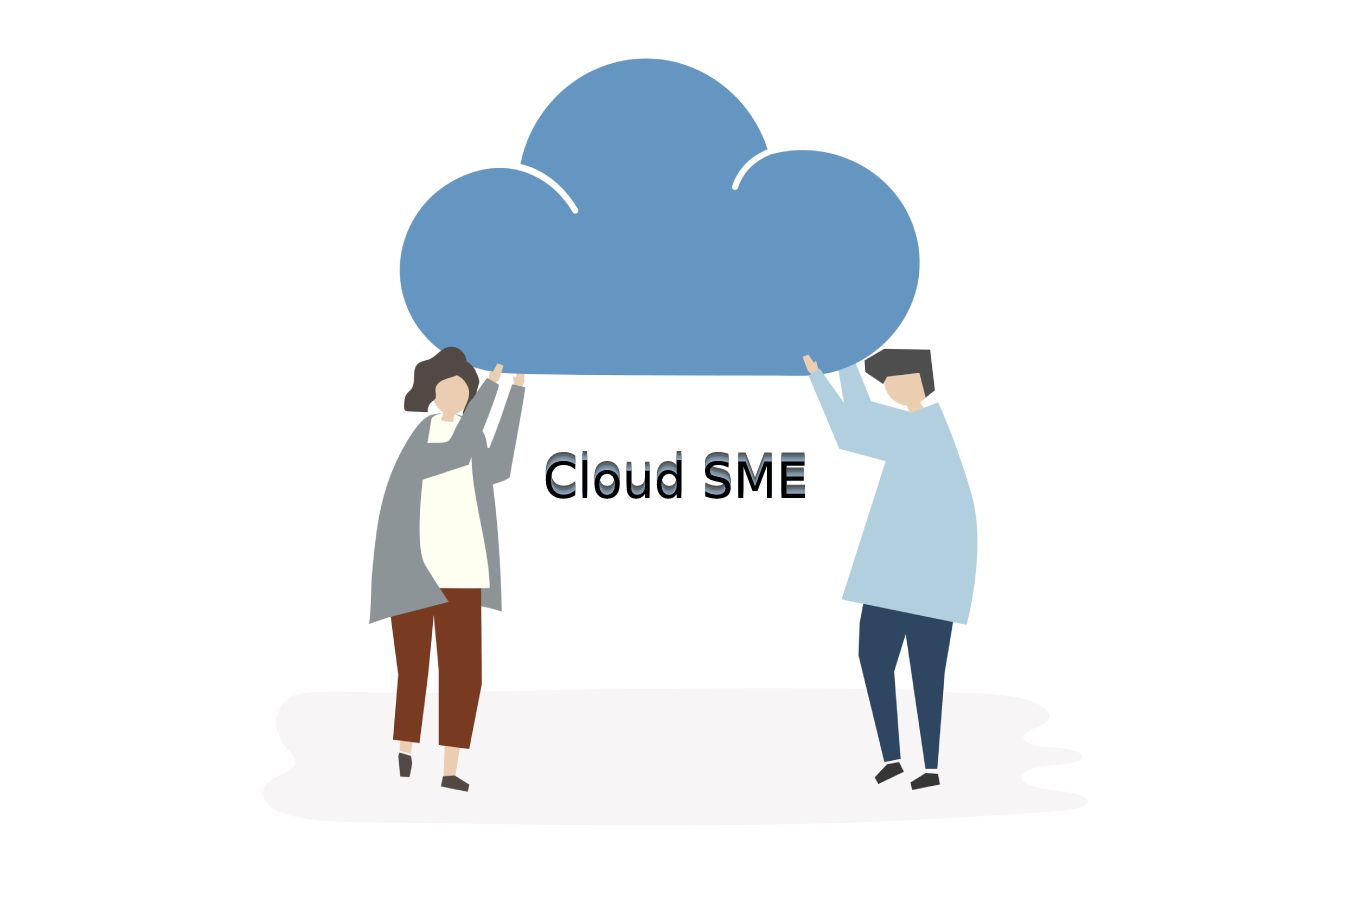 Cloud SME